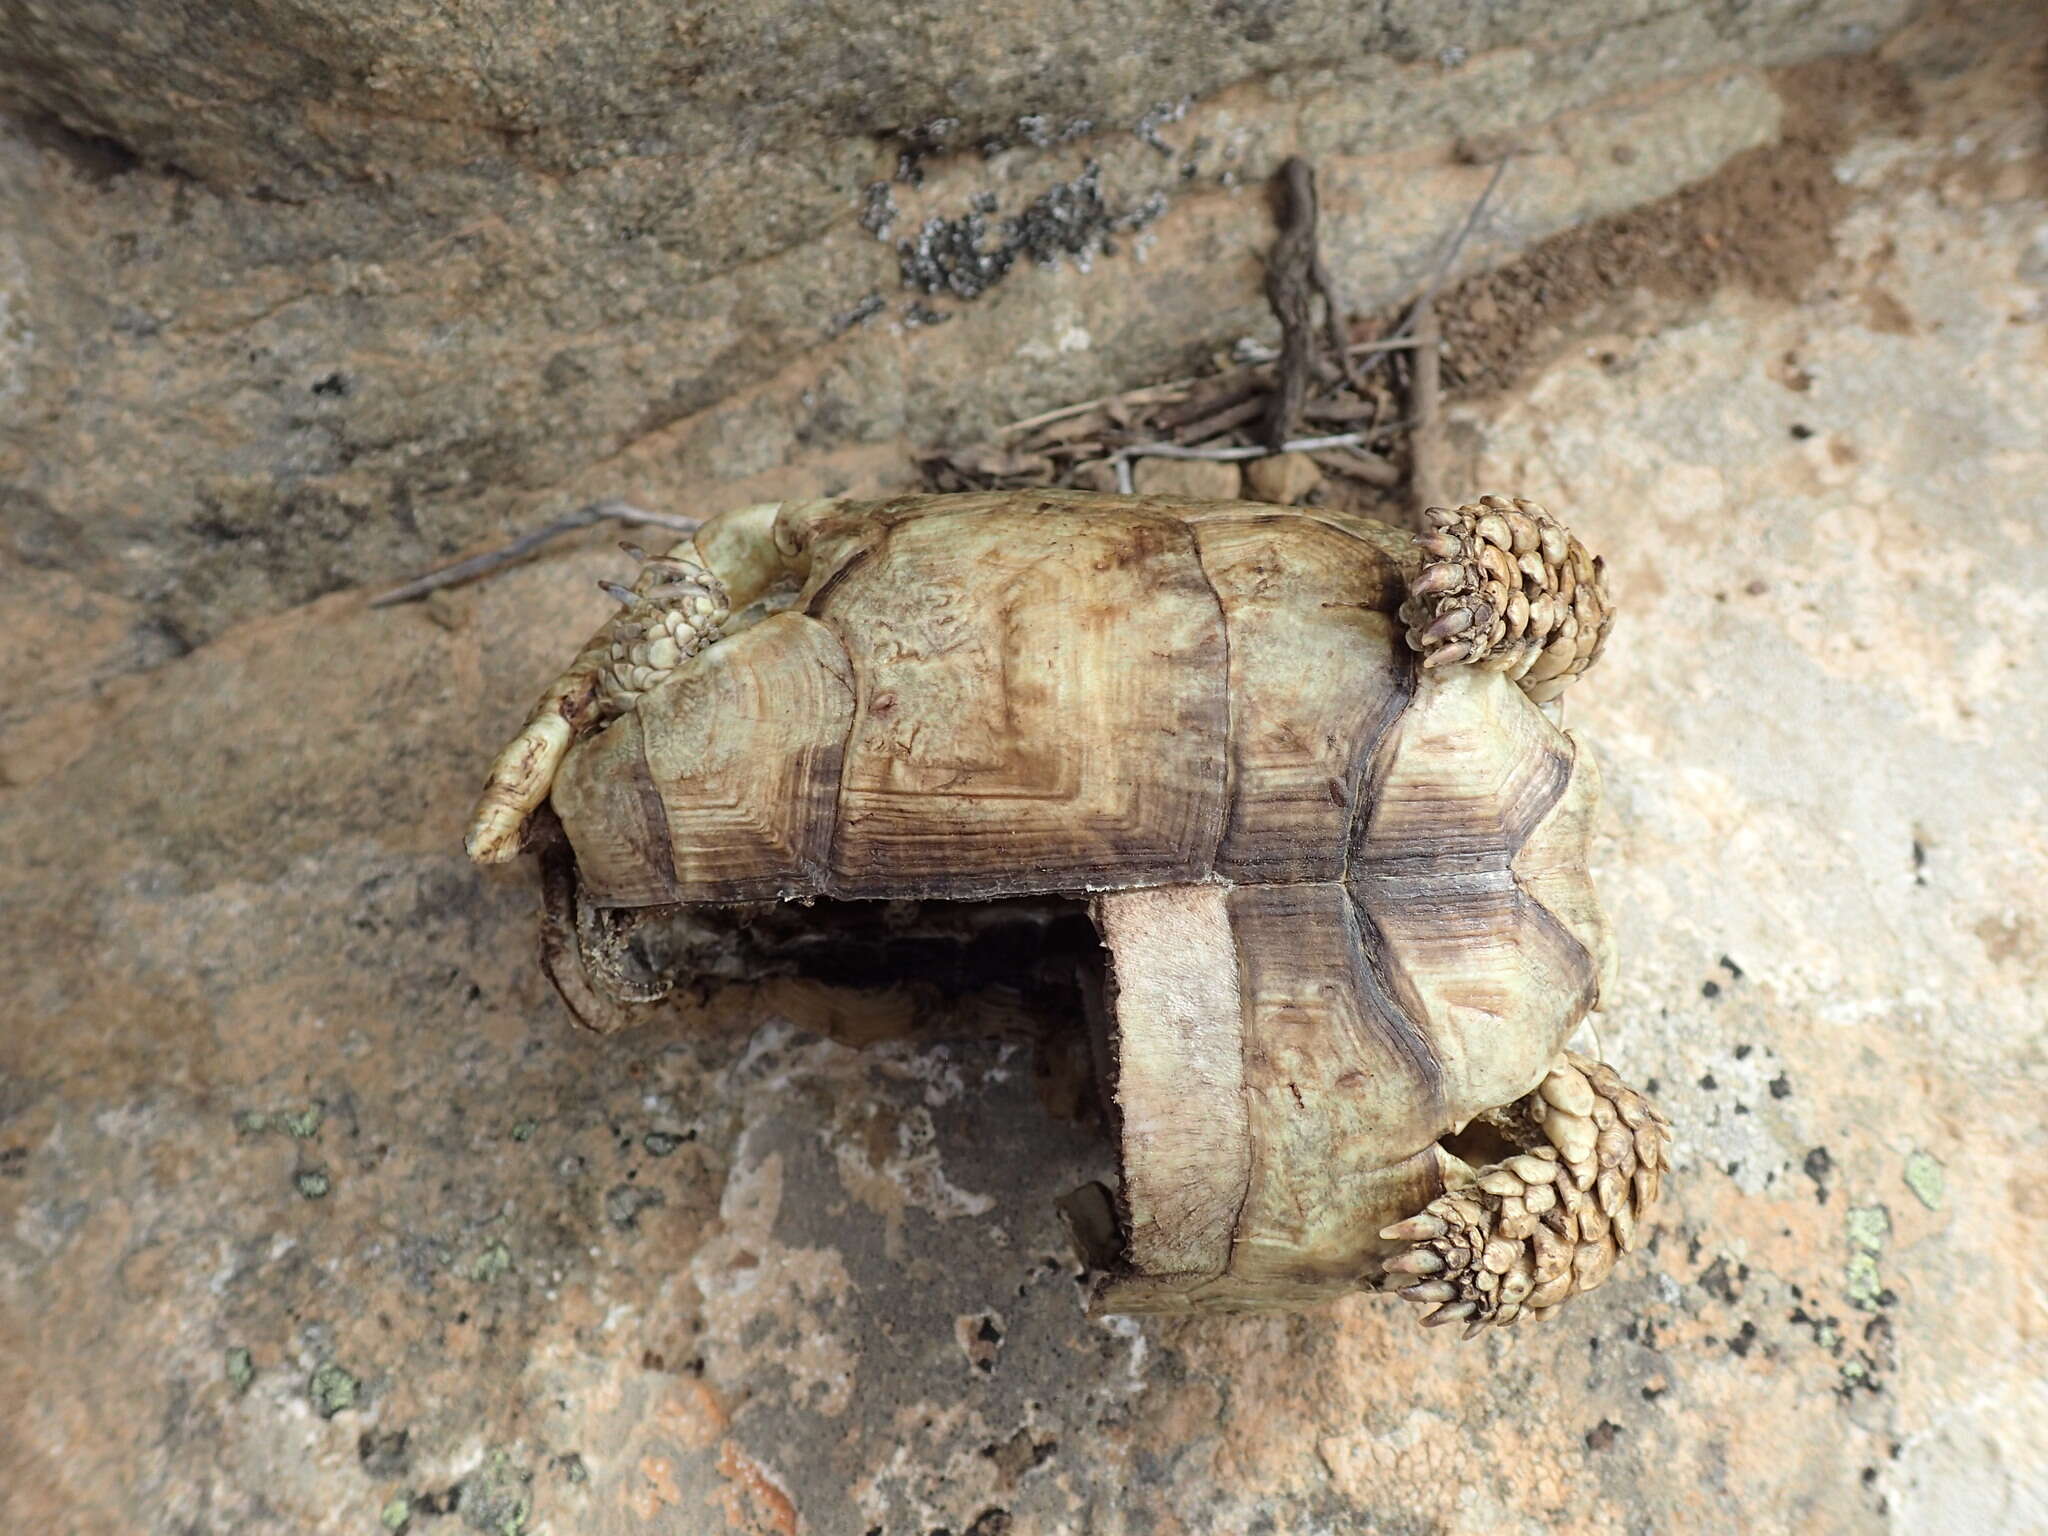 Image of Karoo dwarf tortoise